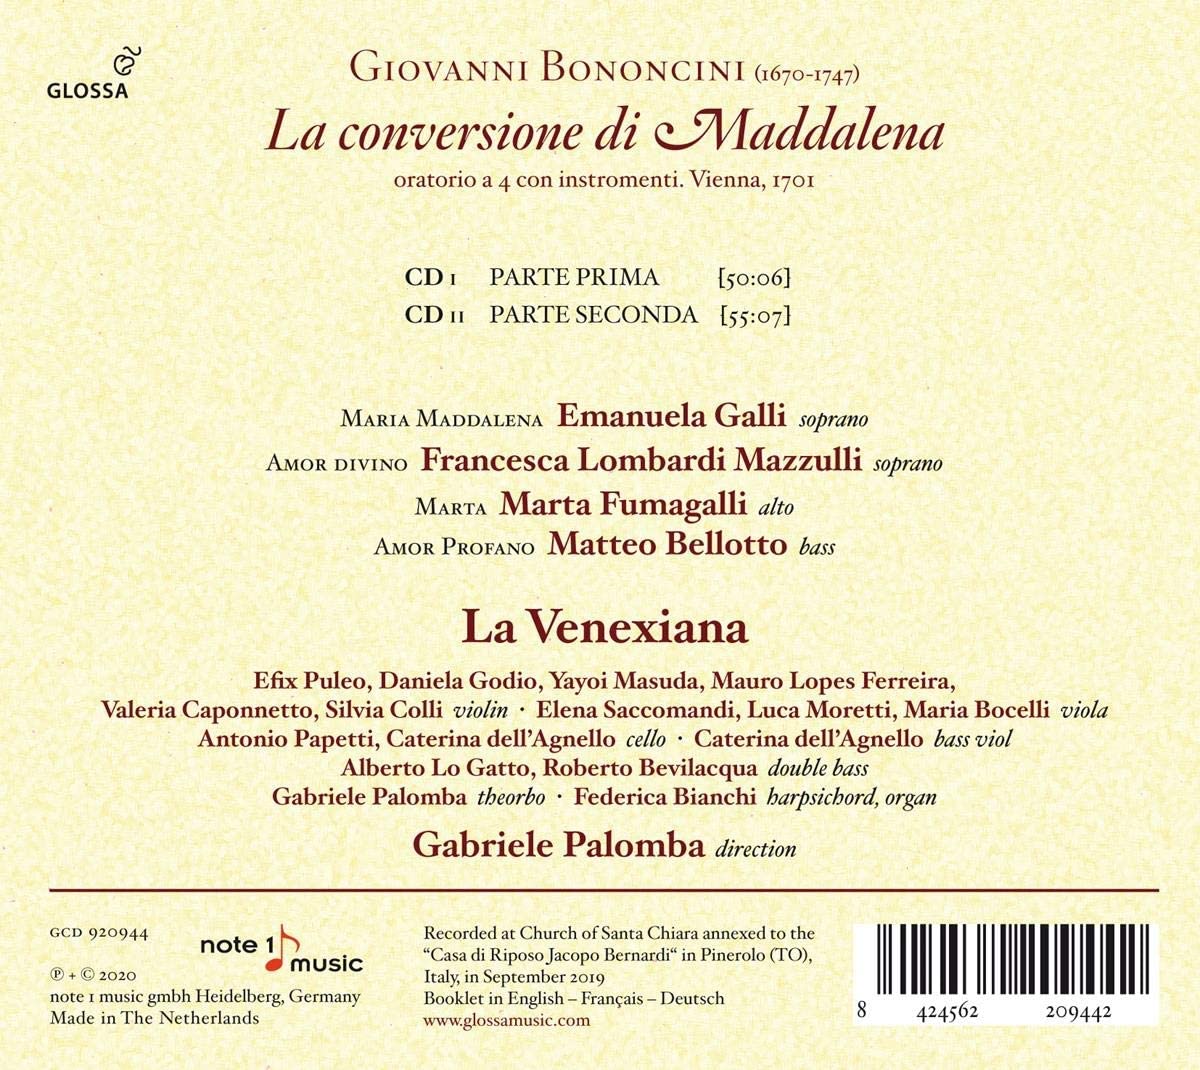 La Venexiana 조반니 바티스타 보논치니: 막달레나의 회개 (Giovanni Battista Bononcini: La Conversione Di Maddalena)